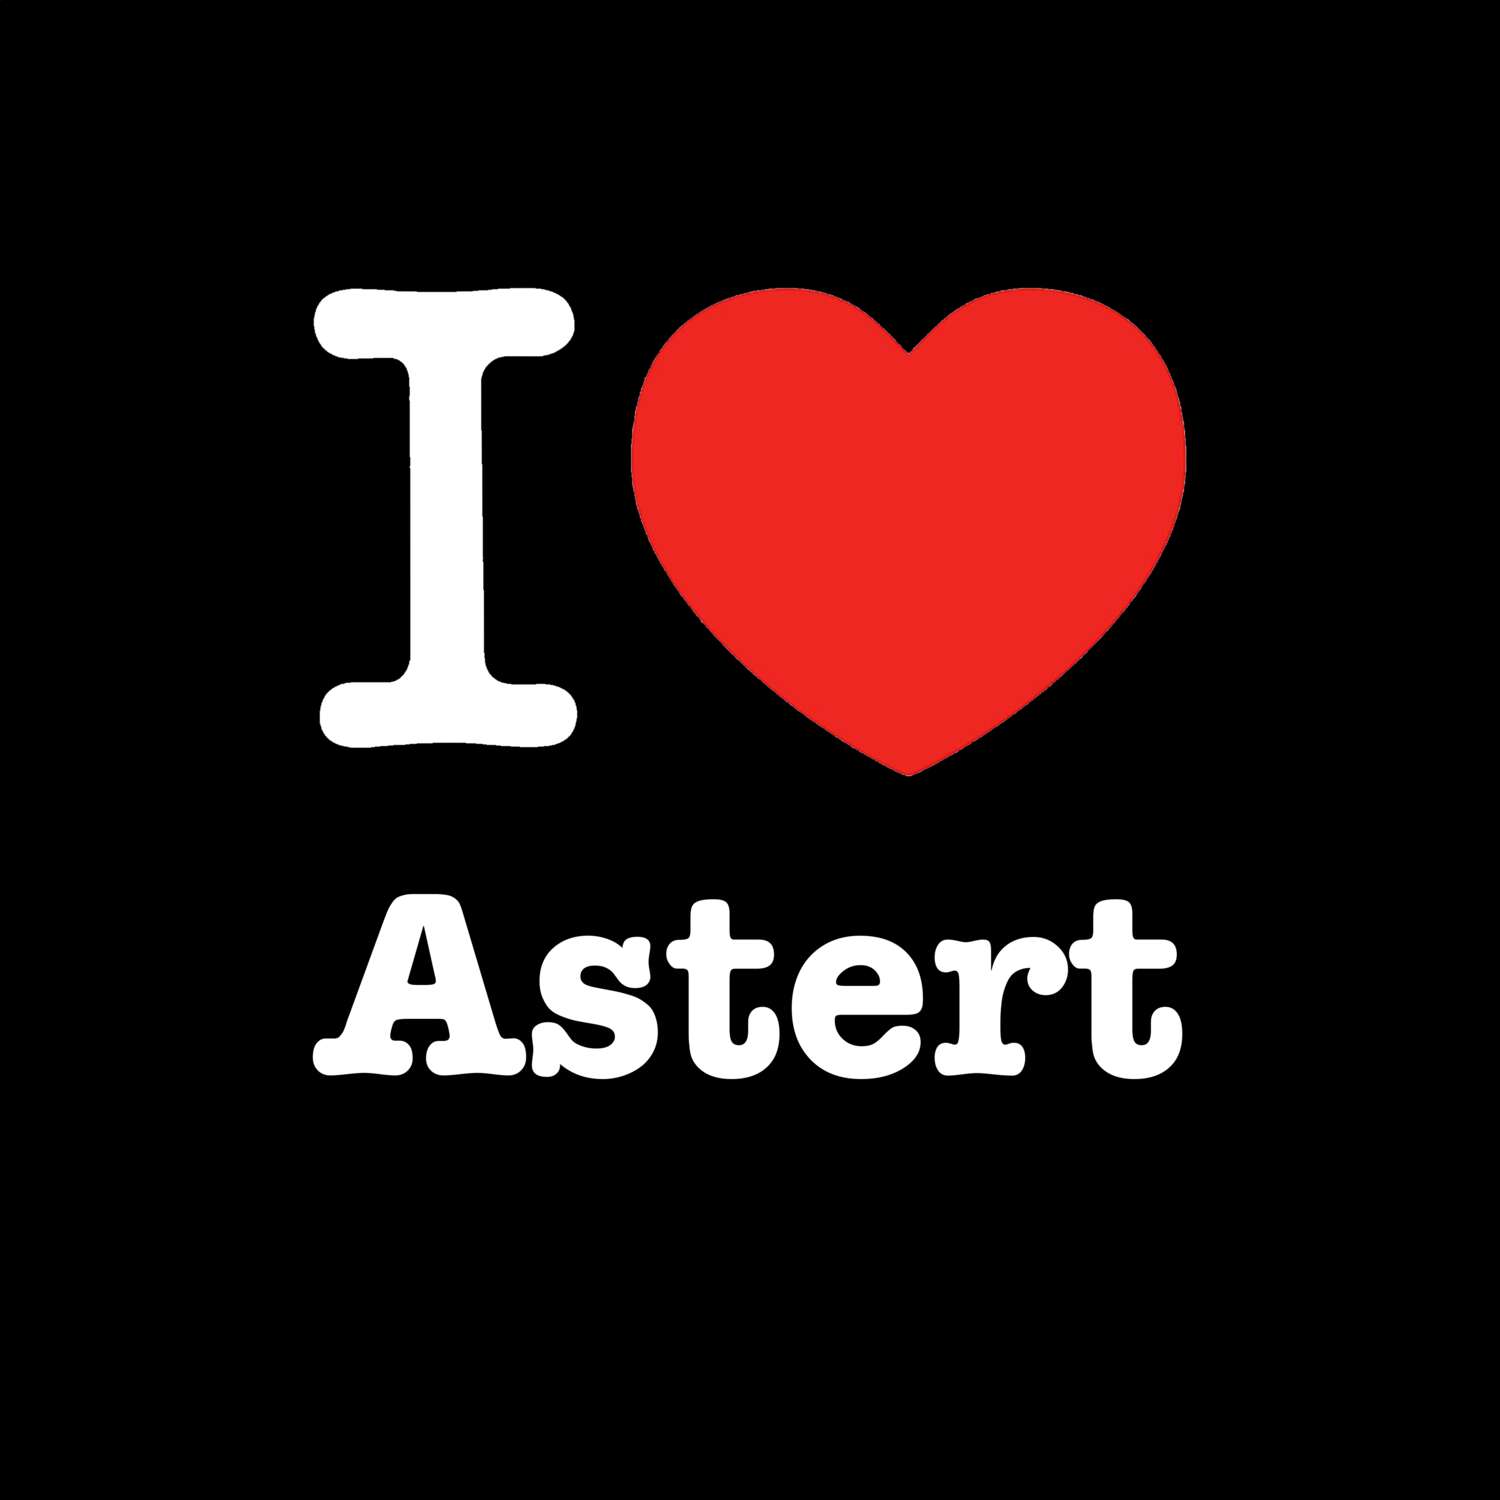 Astert T-Shirt »I love«